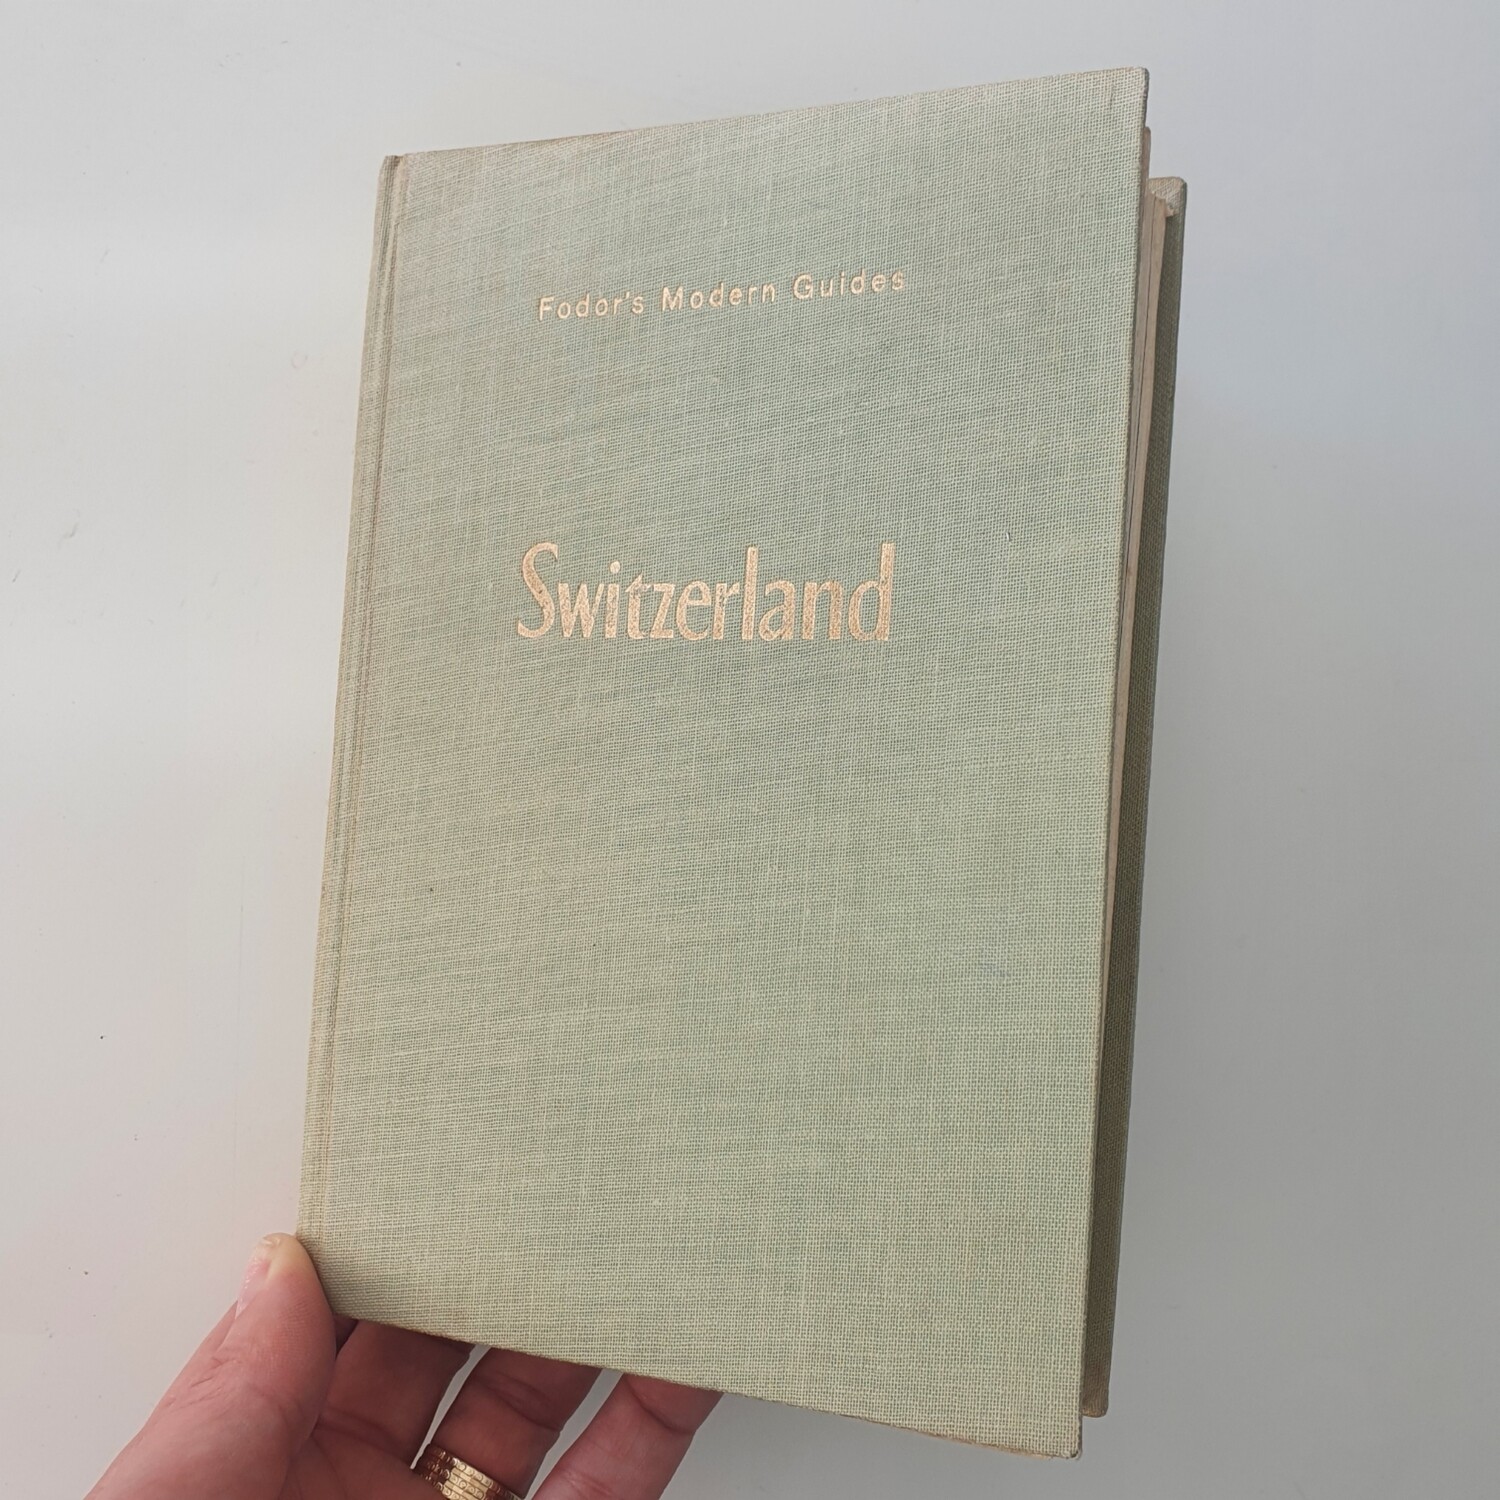 Switzerland - Fodor's Modern Guide 1955